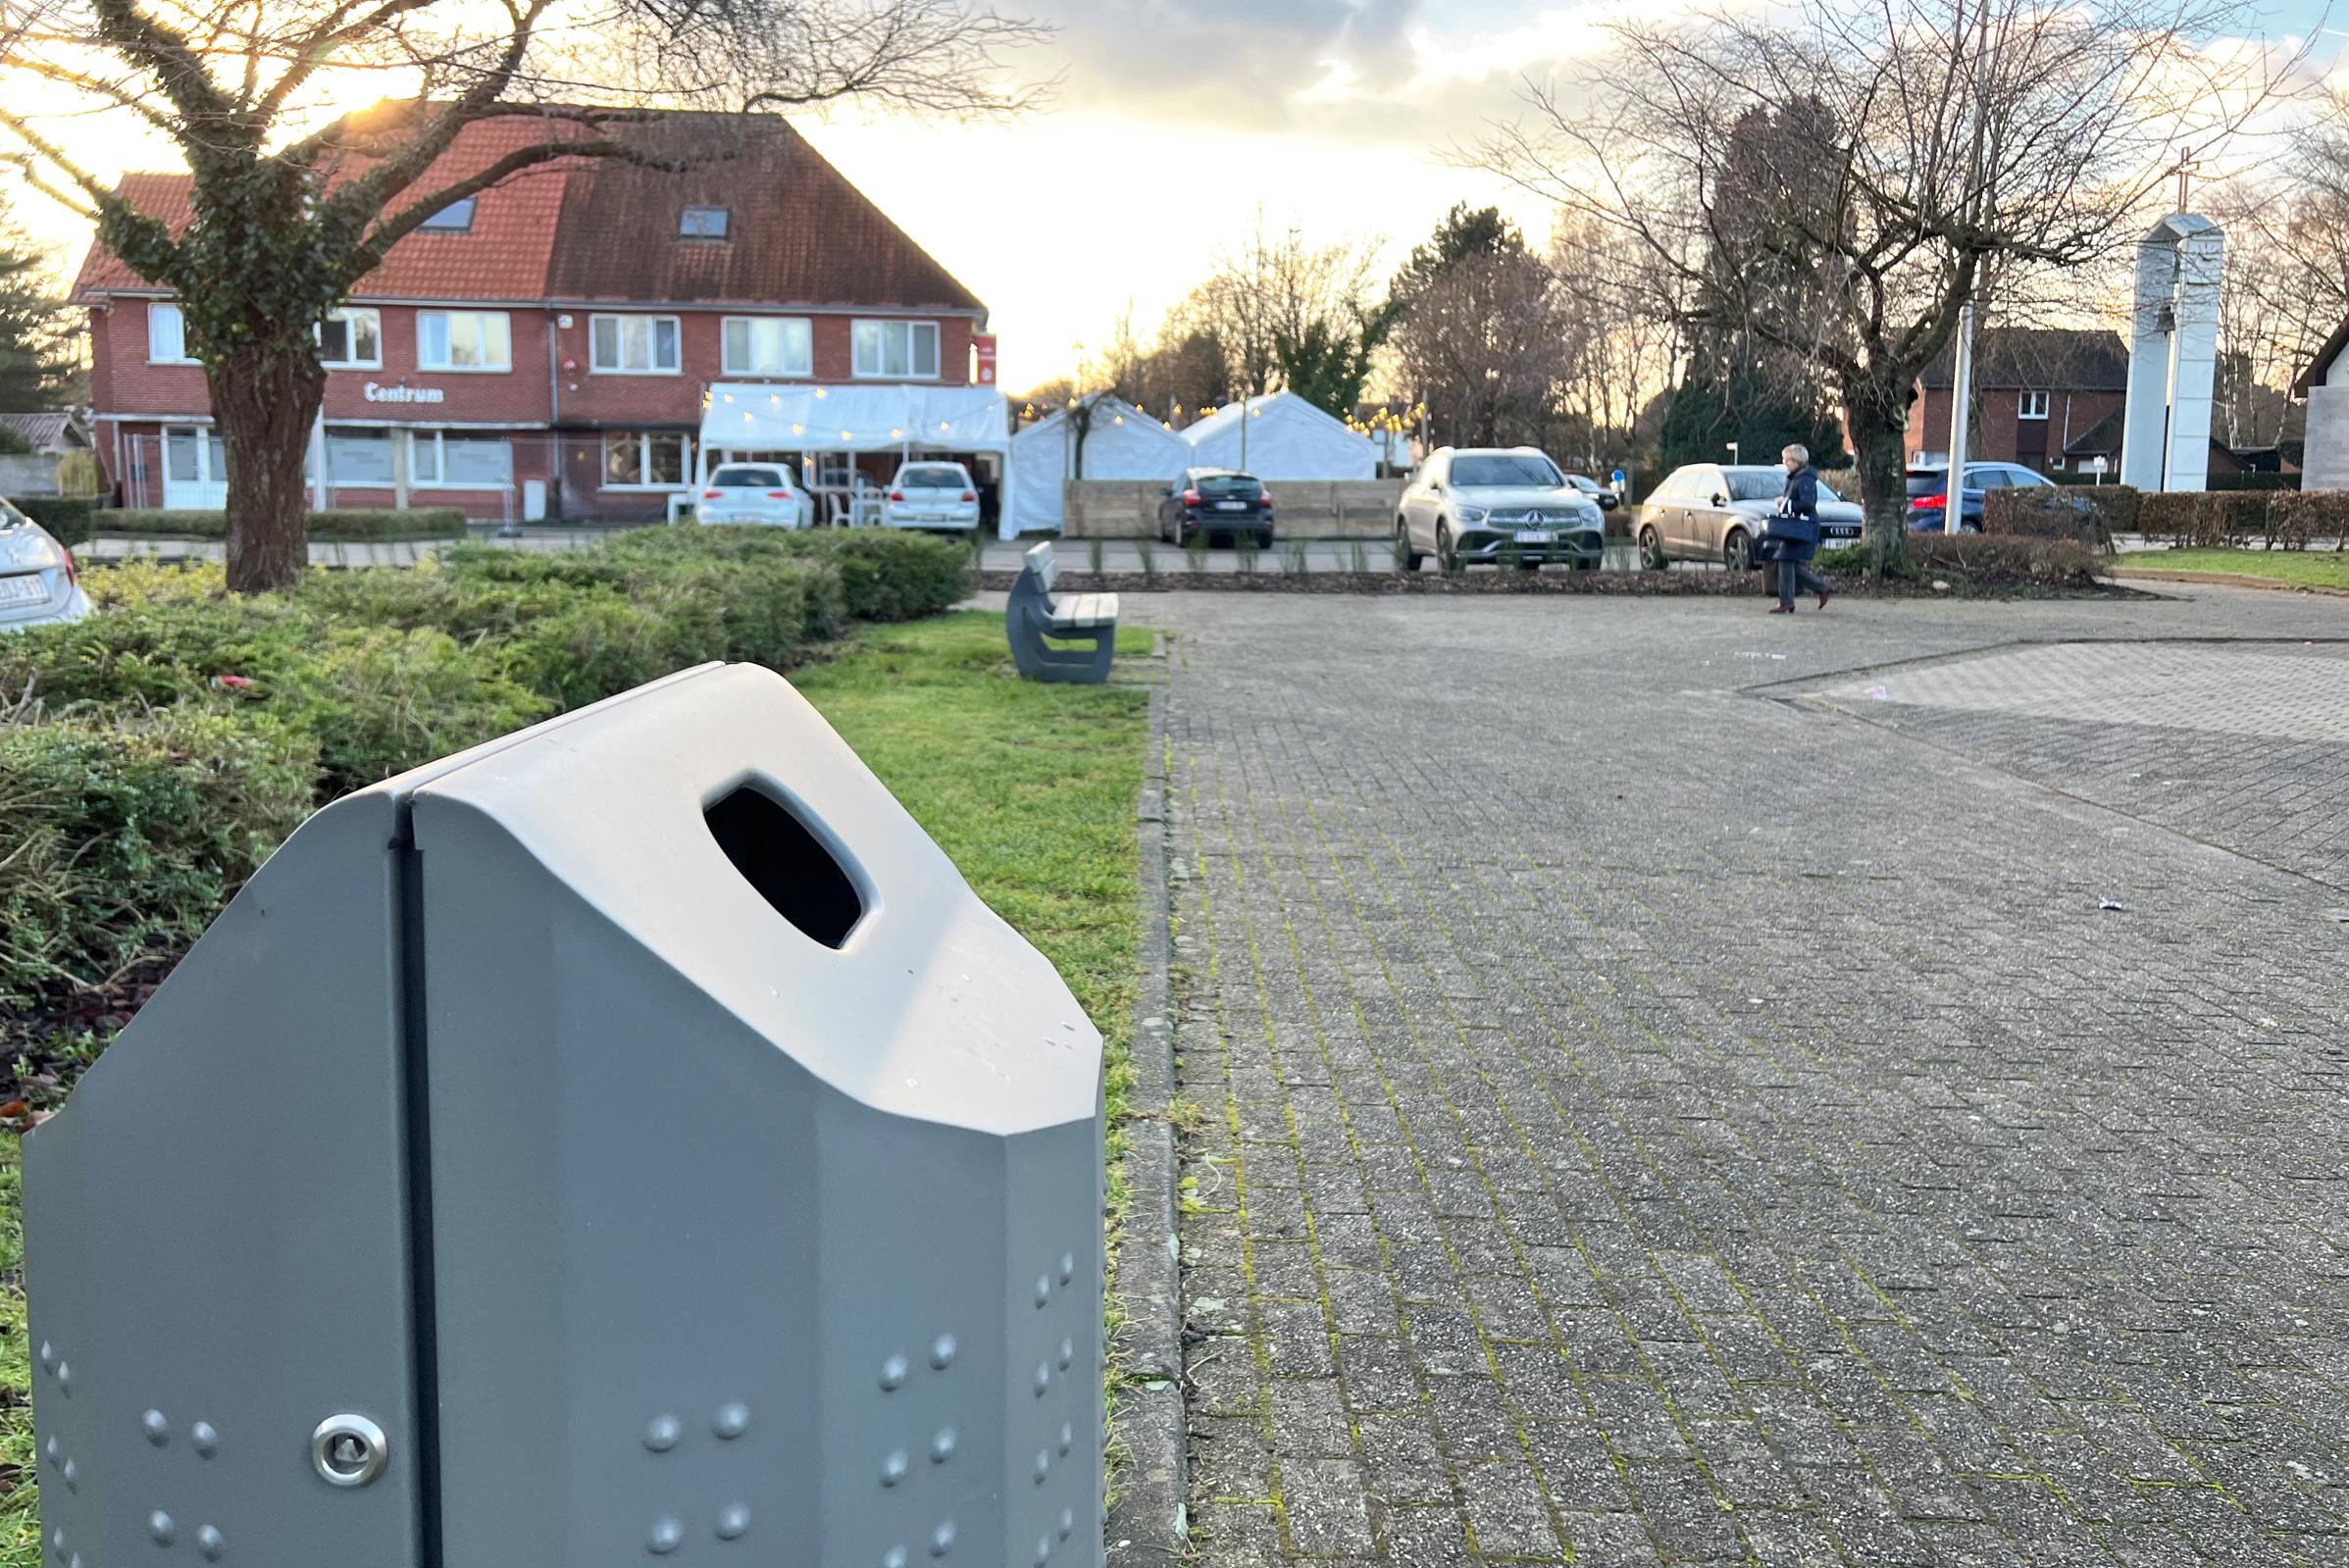 Rechthoek Neerduwen Frustrerend Houthalen-Helchteren laat vandaal-bestendige vuilnisbakken plaatsen  (Houthalen-Helchteren) | Het Nieuwsblad Mobile